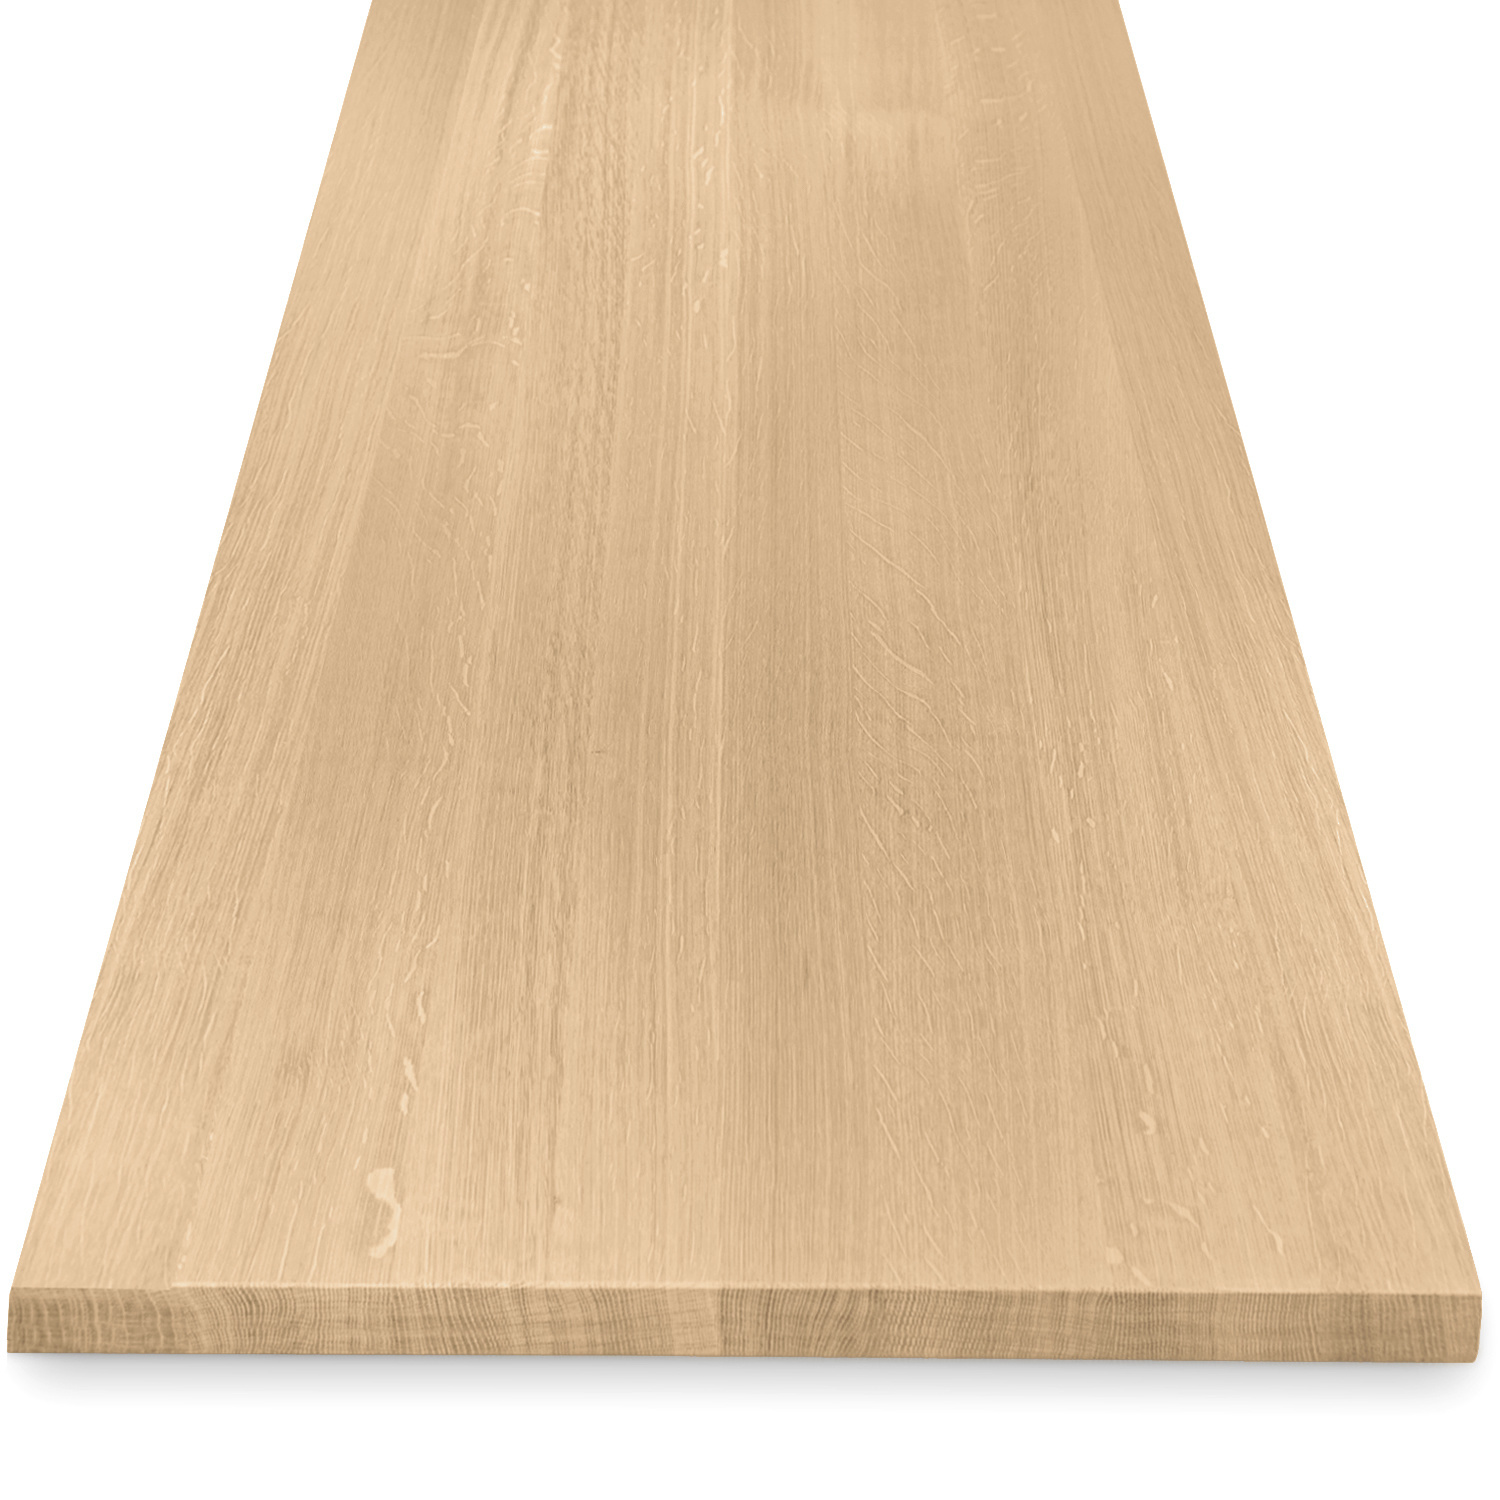  Tischplatte Eiche nach Maß - 4 cm dick (1-Schicht) - Breite Lamellen (10 - 12 cm breit) - Eichenholz A-Qualität - verleimt & künstlich getrocknet (HF 8-12%) - 50-120x50-248 cm